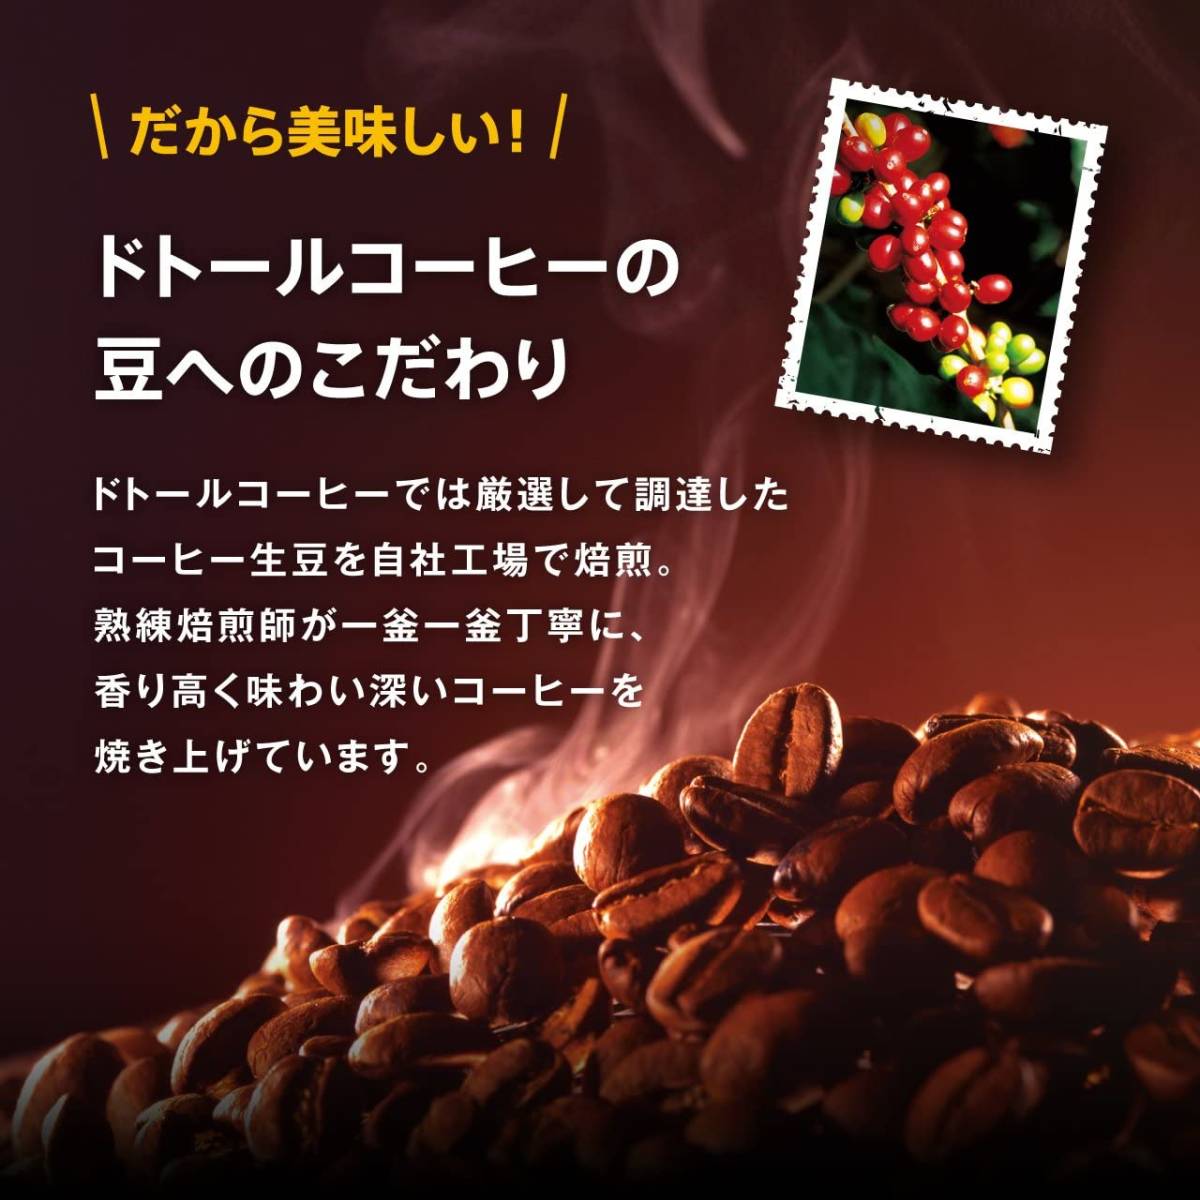 【ドリップコーヒー】ドトールコーヒー 深煎りブレンド 100袋■レギュラーコーヒー ドリップパック